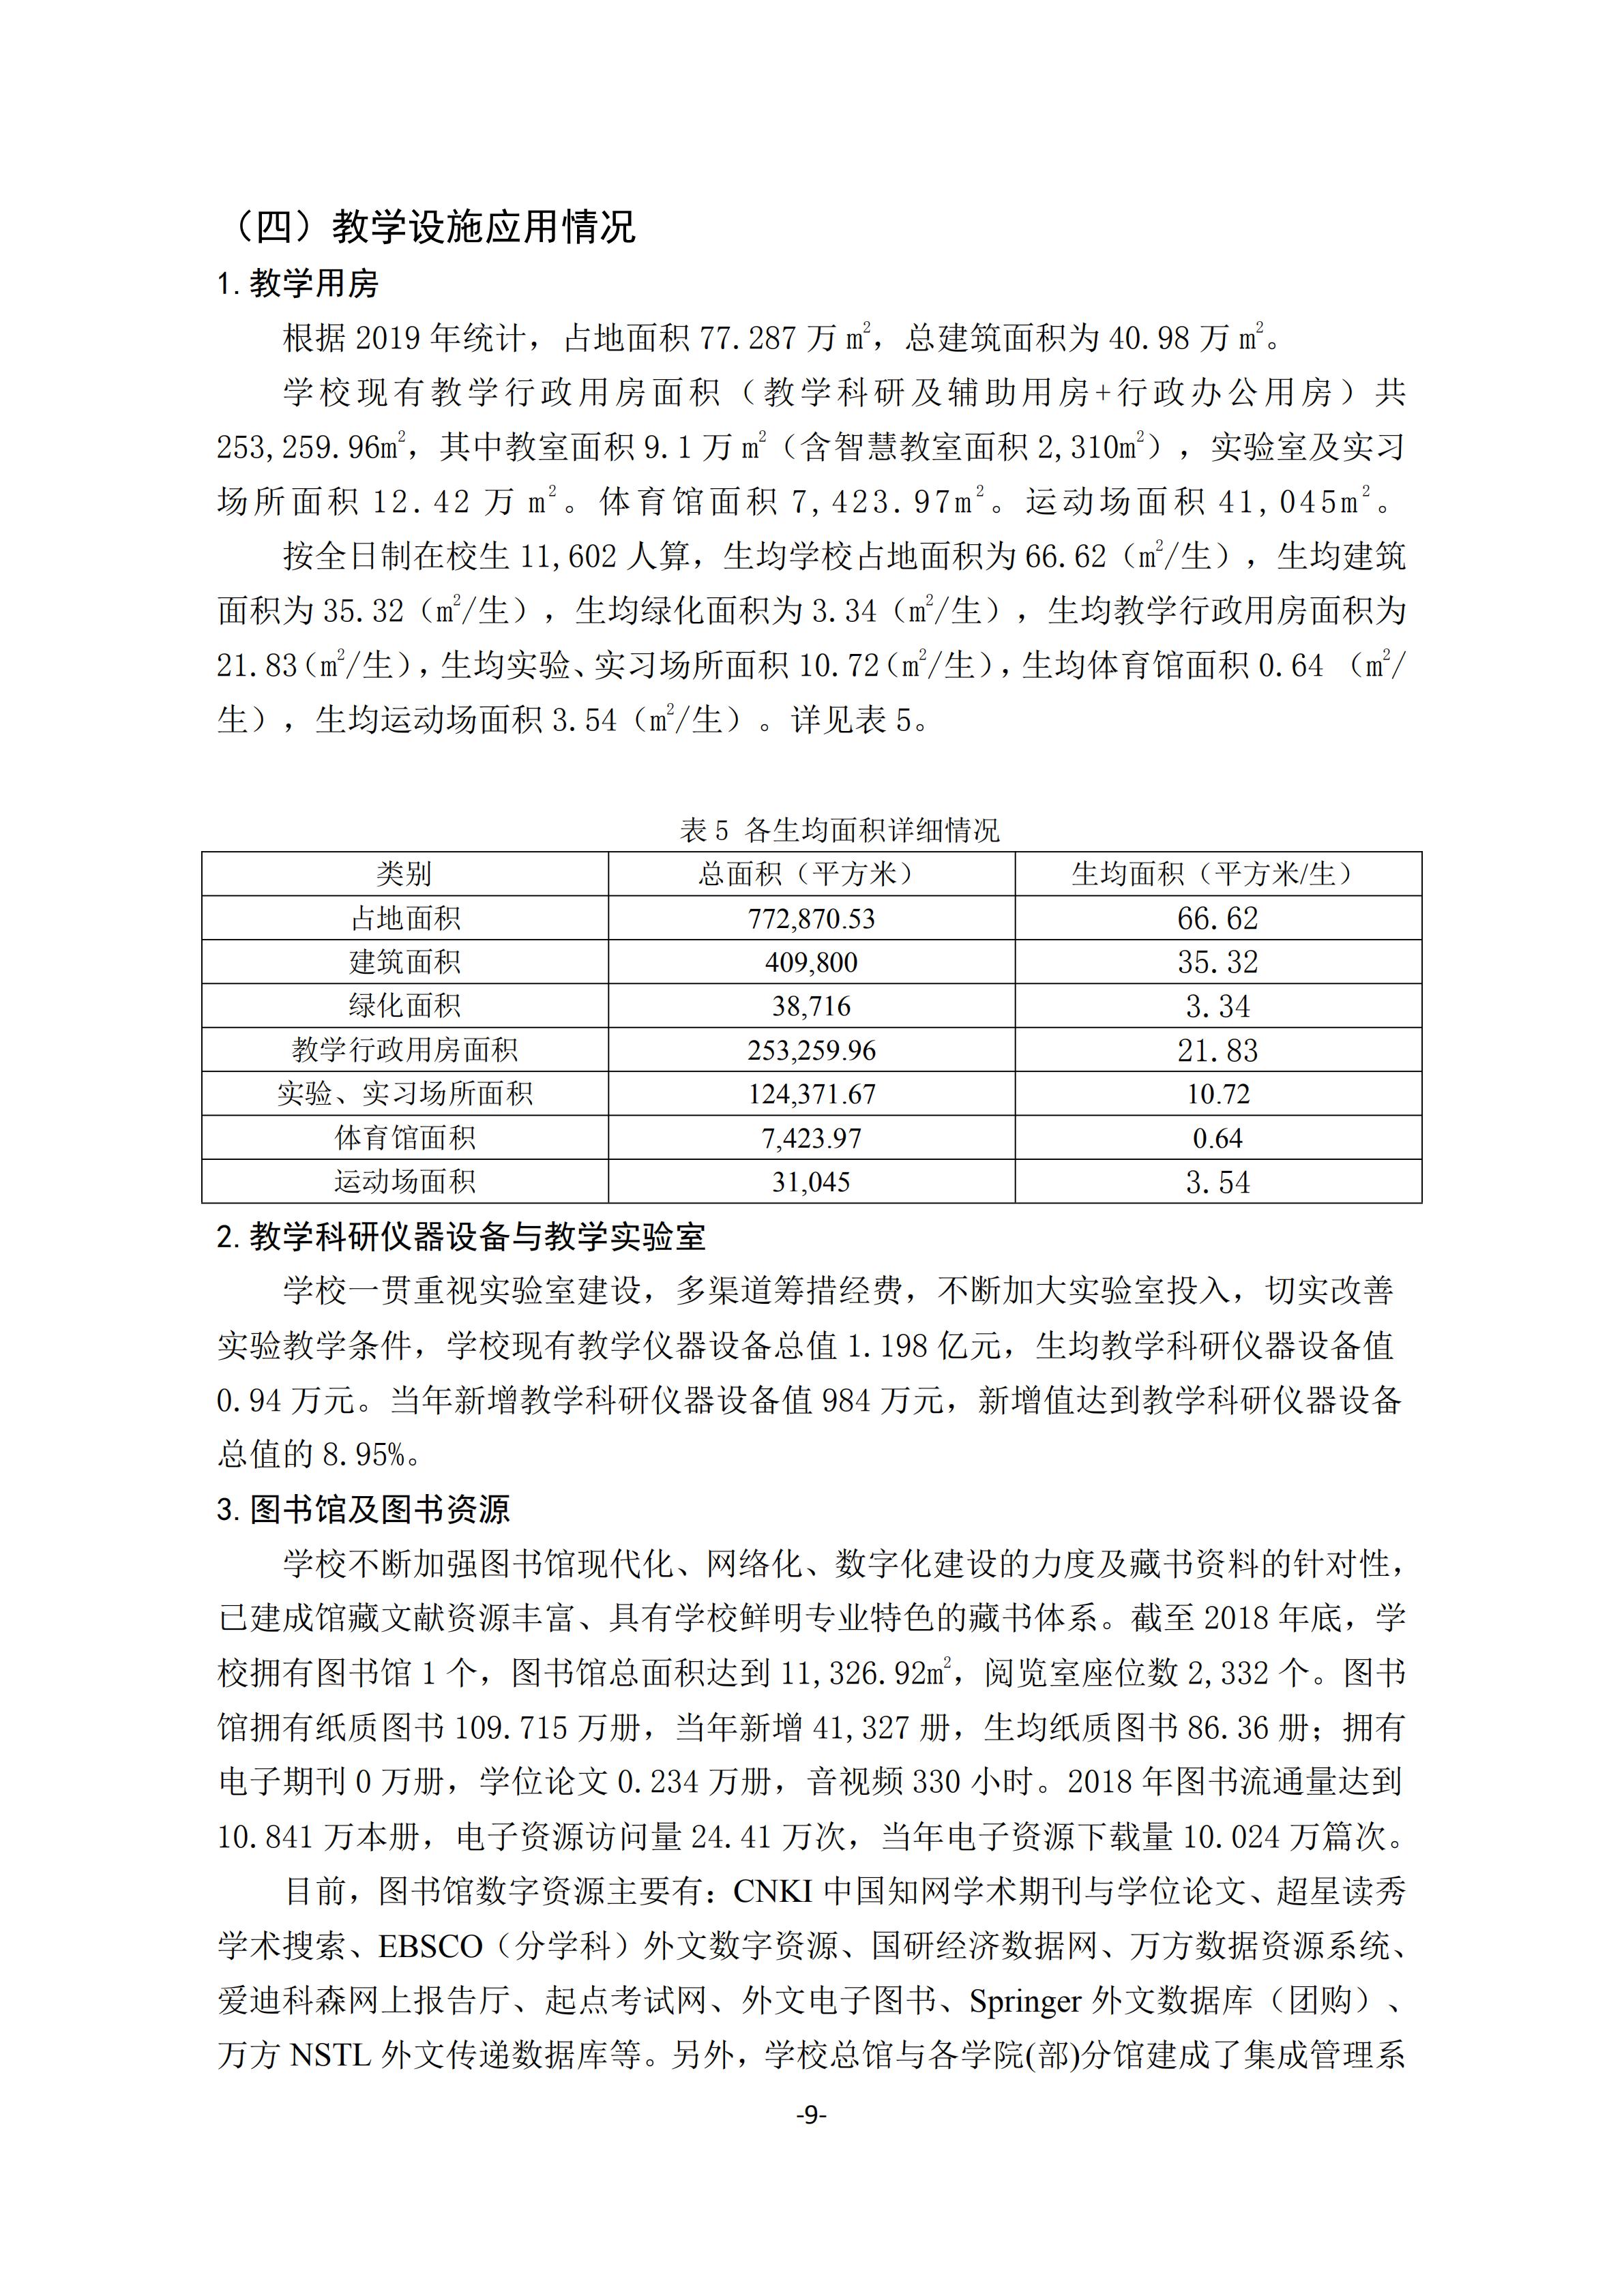 1.湖南交通工程学院2018-2019学年本科教学质量报告_08.jpg